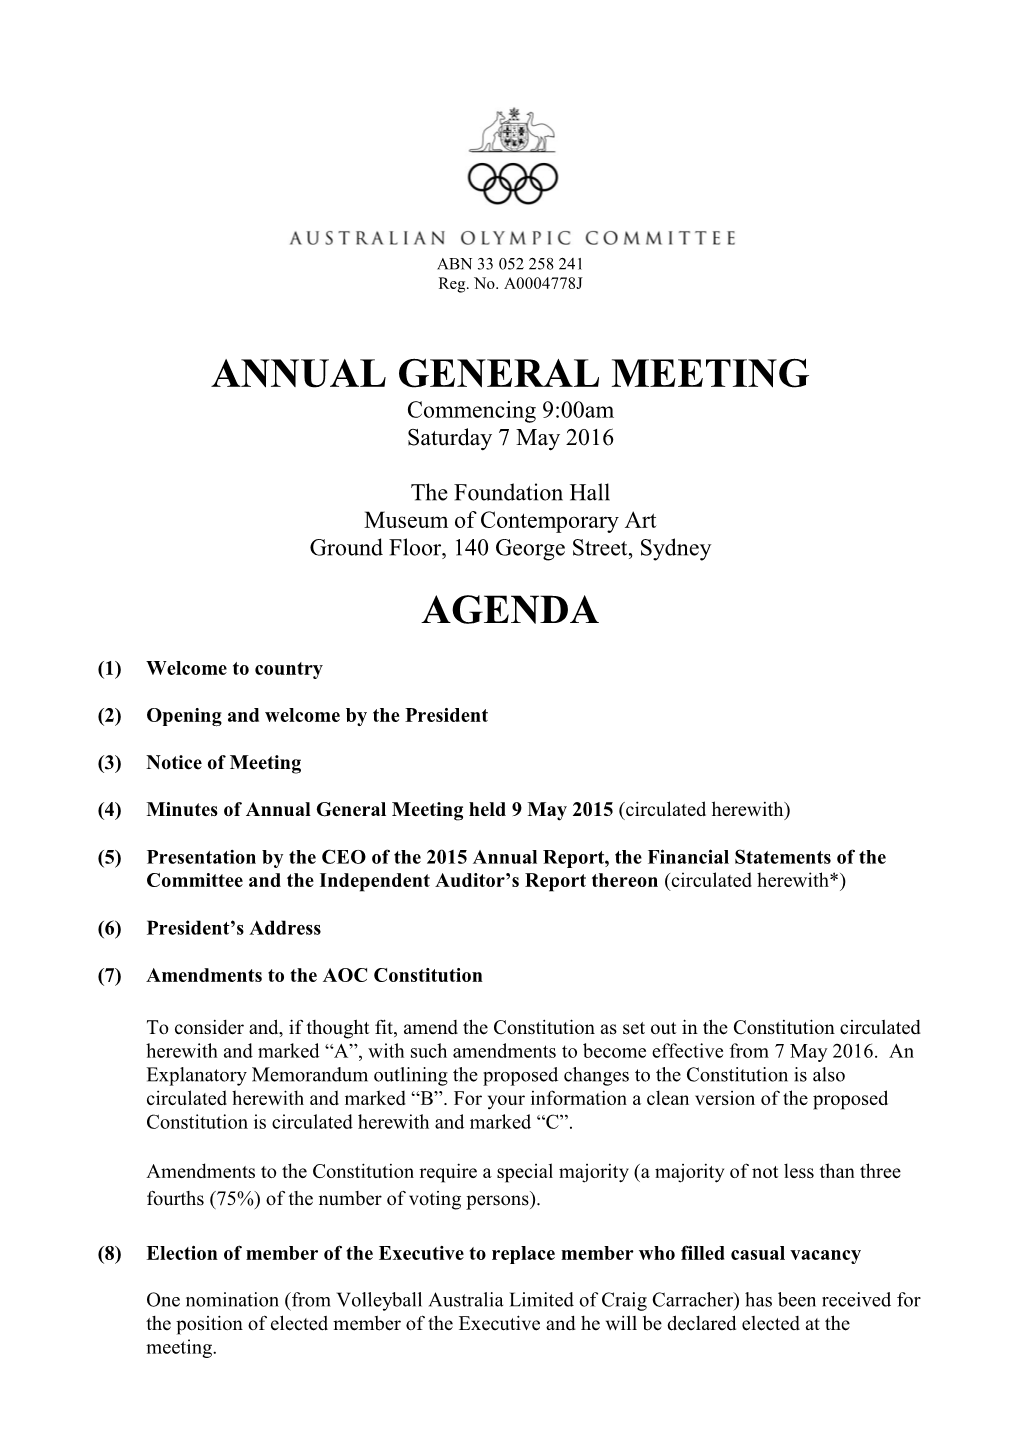 Annual General Meeting Agenda